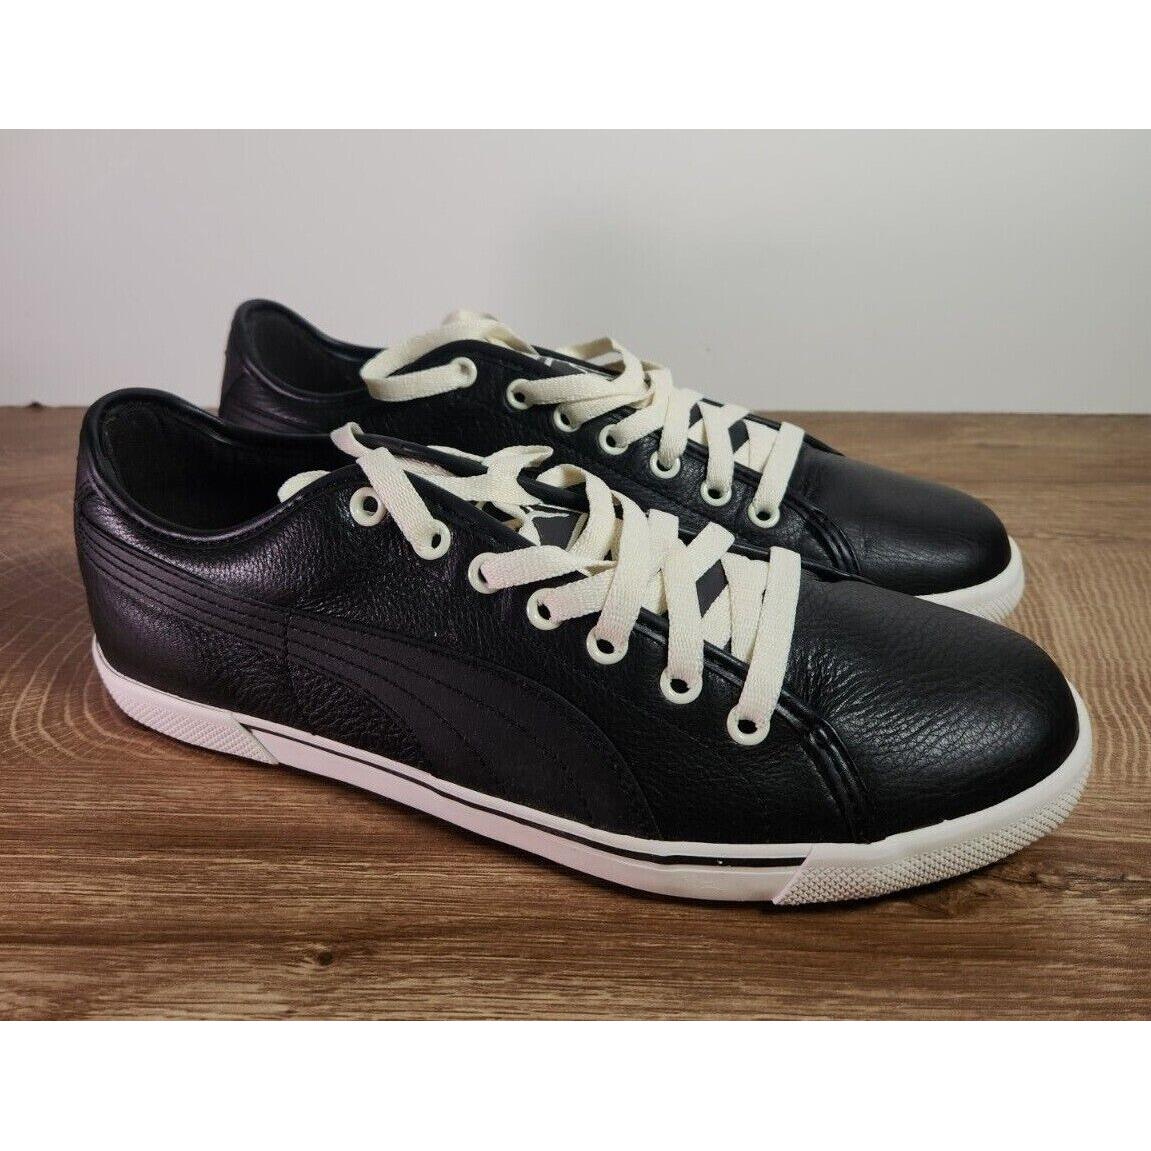 liberal Gracias atención Puma Shoes Mens Size 9 Benecio Leather Track Running Sneakers Lace Up |  051211308140 - Puma shoes Benecio - Black | SporTipTop